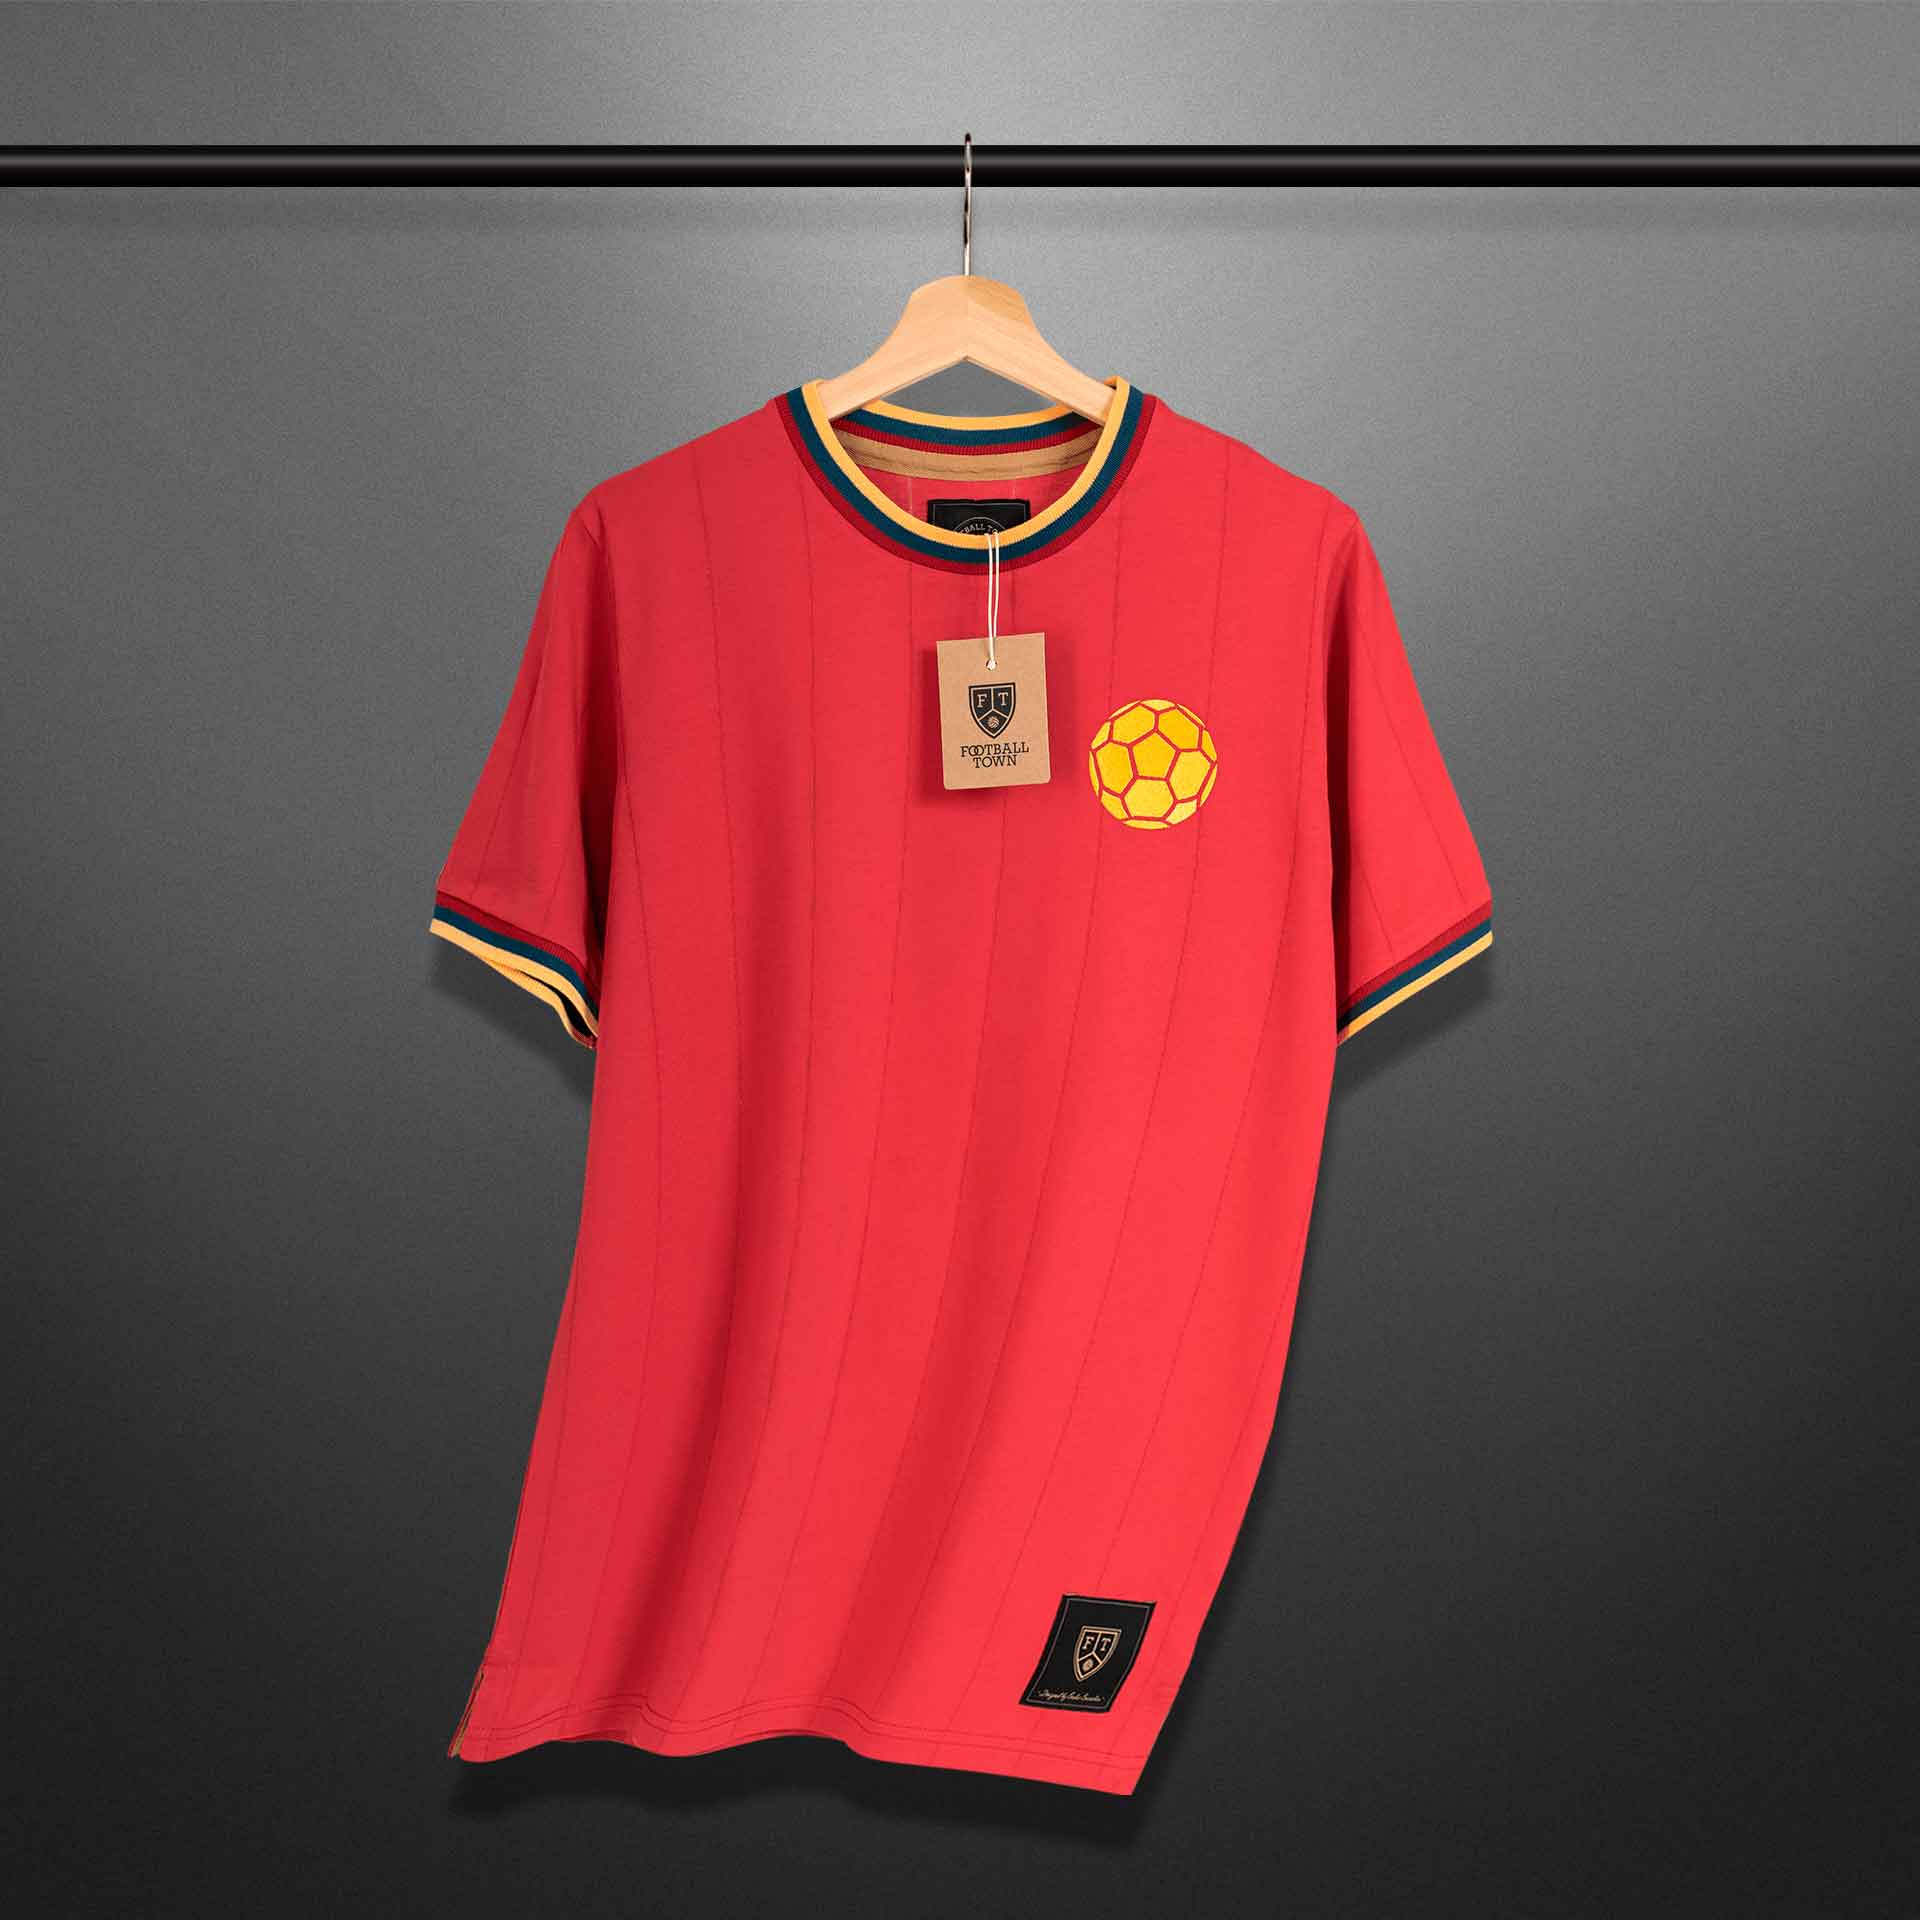 Precio, características y dónde venden la nueva camiseta roja de Colombia -  Futbolete